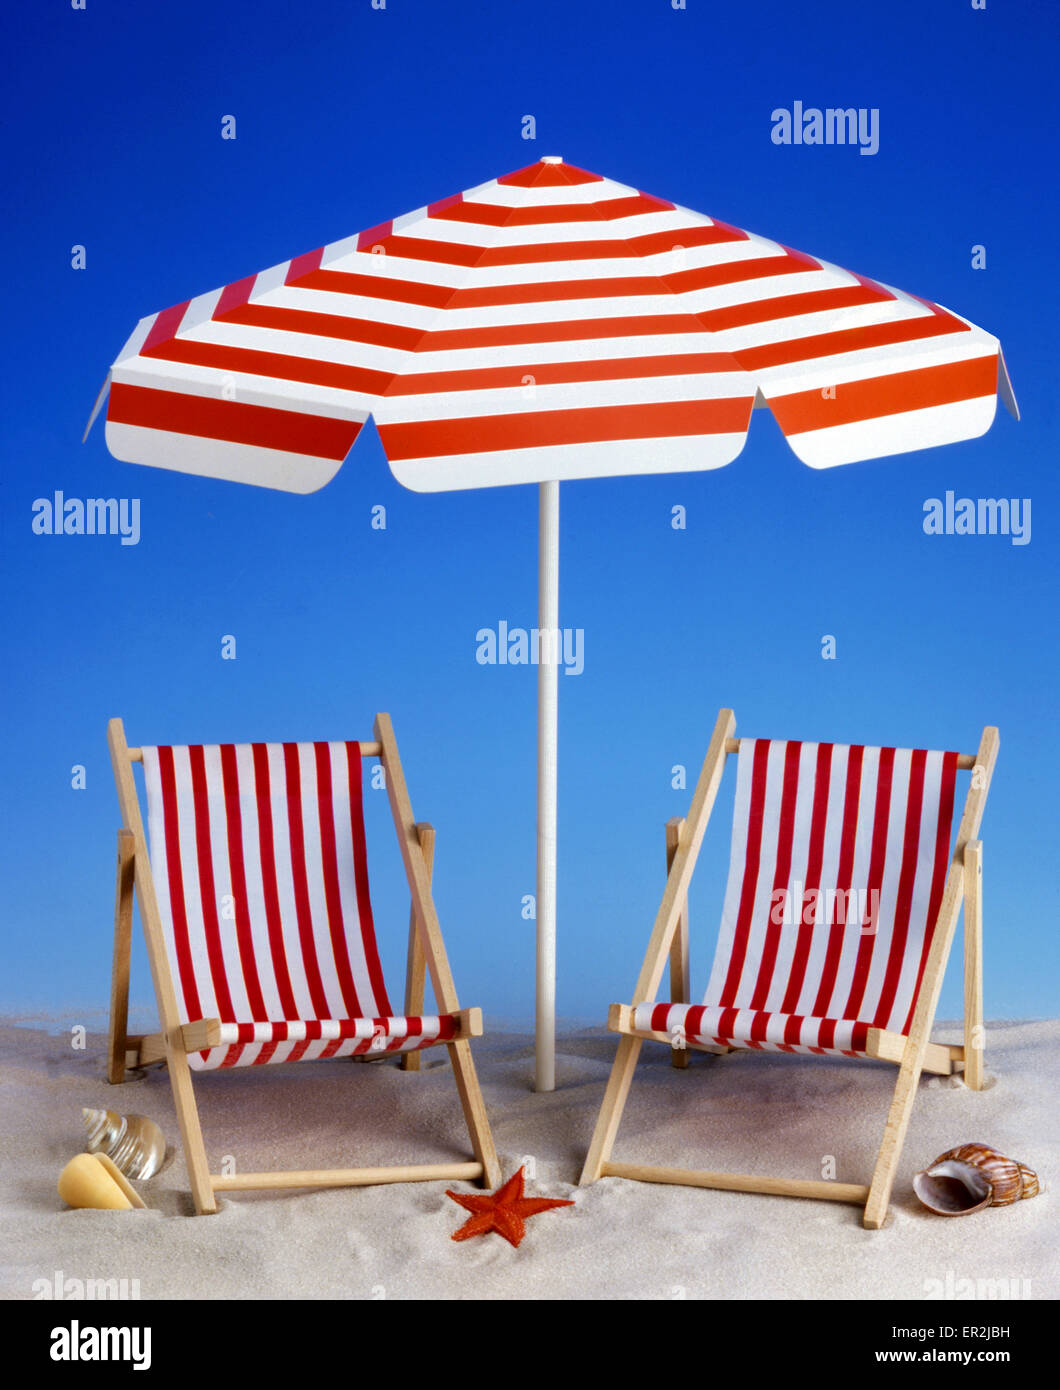 Strand, Liegestuhl, Liegestuehle, Sonnenschirm, Dekoration, Symbol, Urlaub Freizeit, Reisen Stock Photo